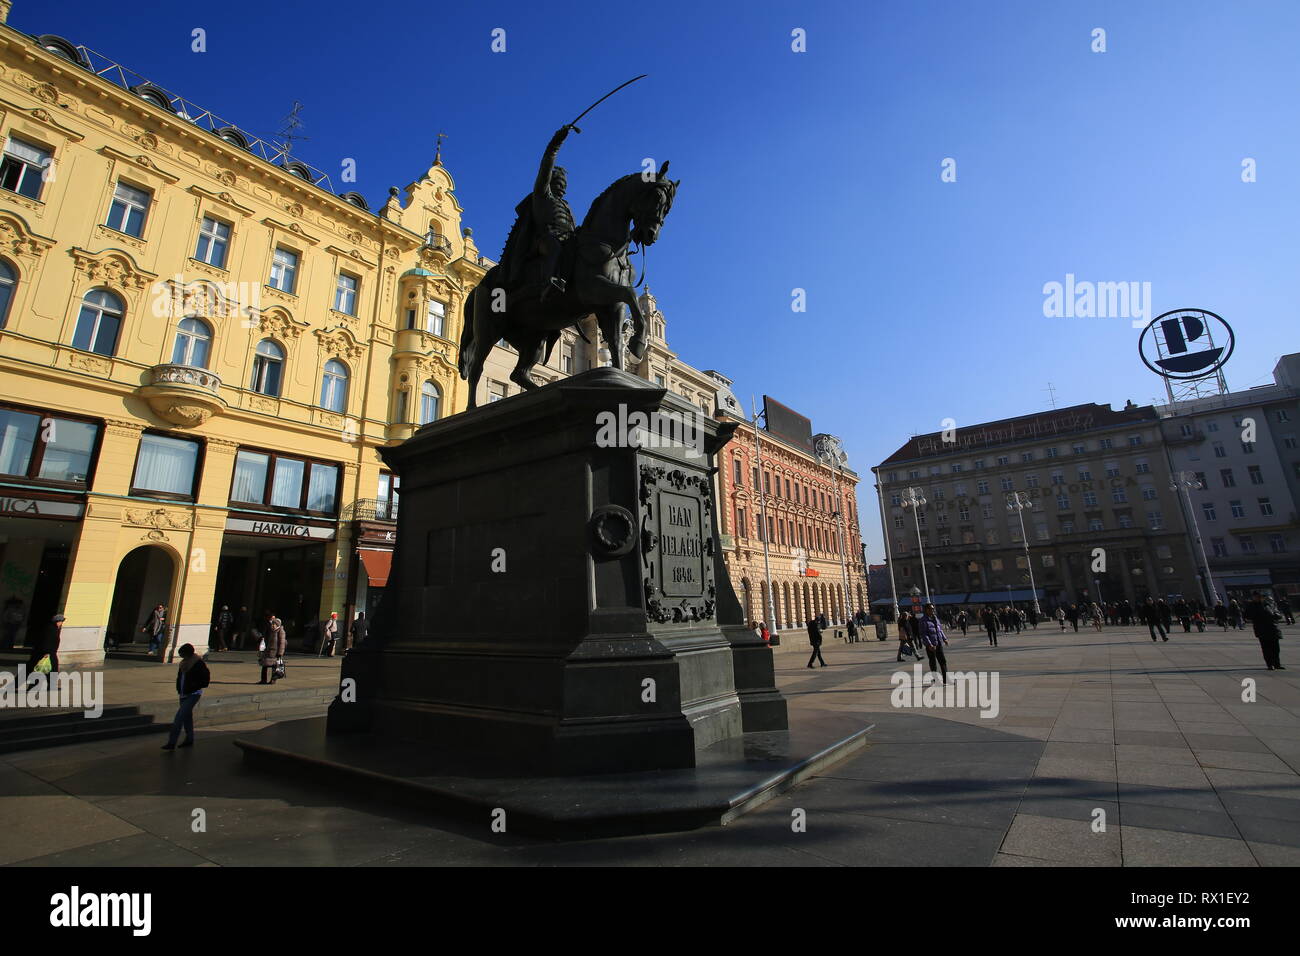 Zagreb/Croaita - 20 2019 janvier, Ban Josip Jelacic Square vue de jour Banque D'Images